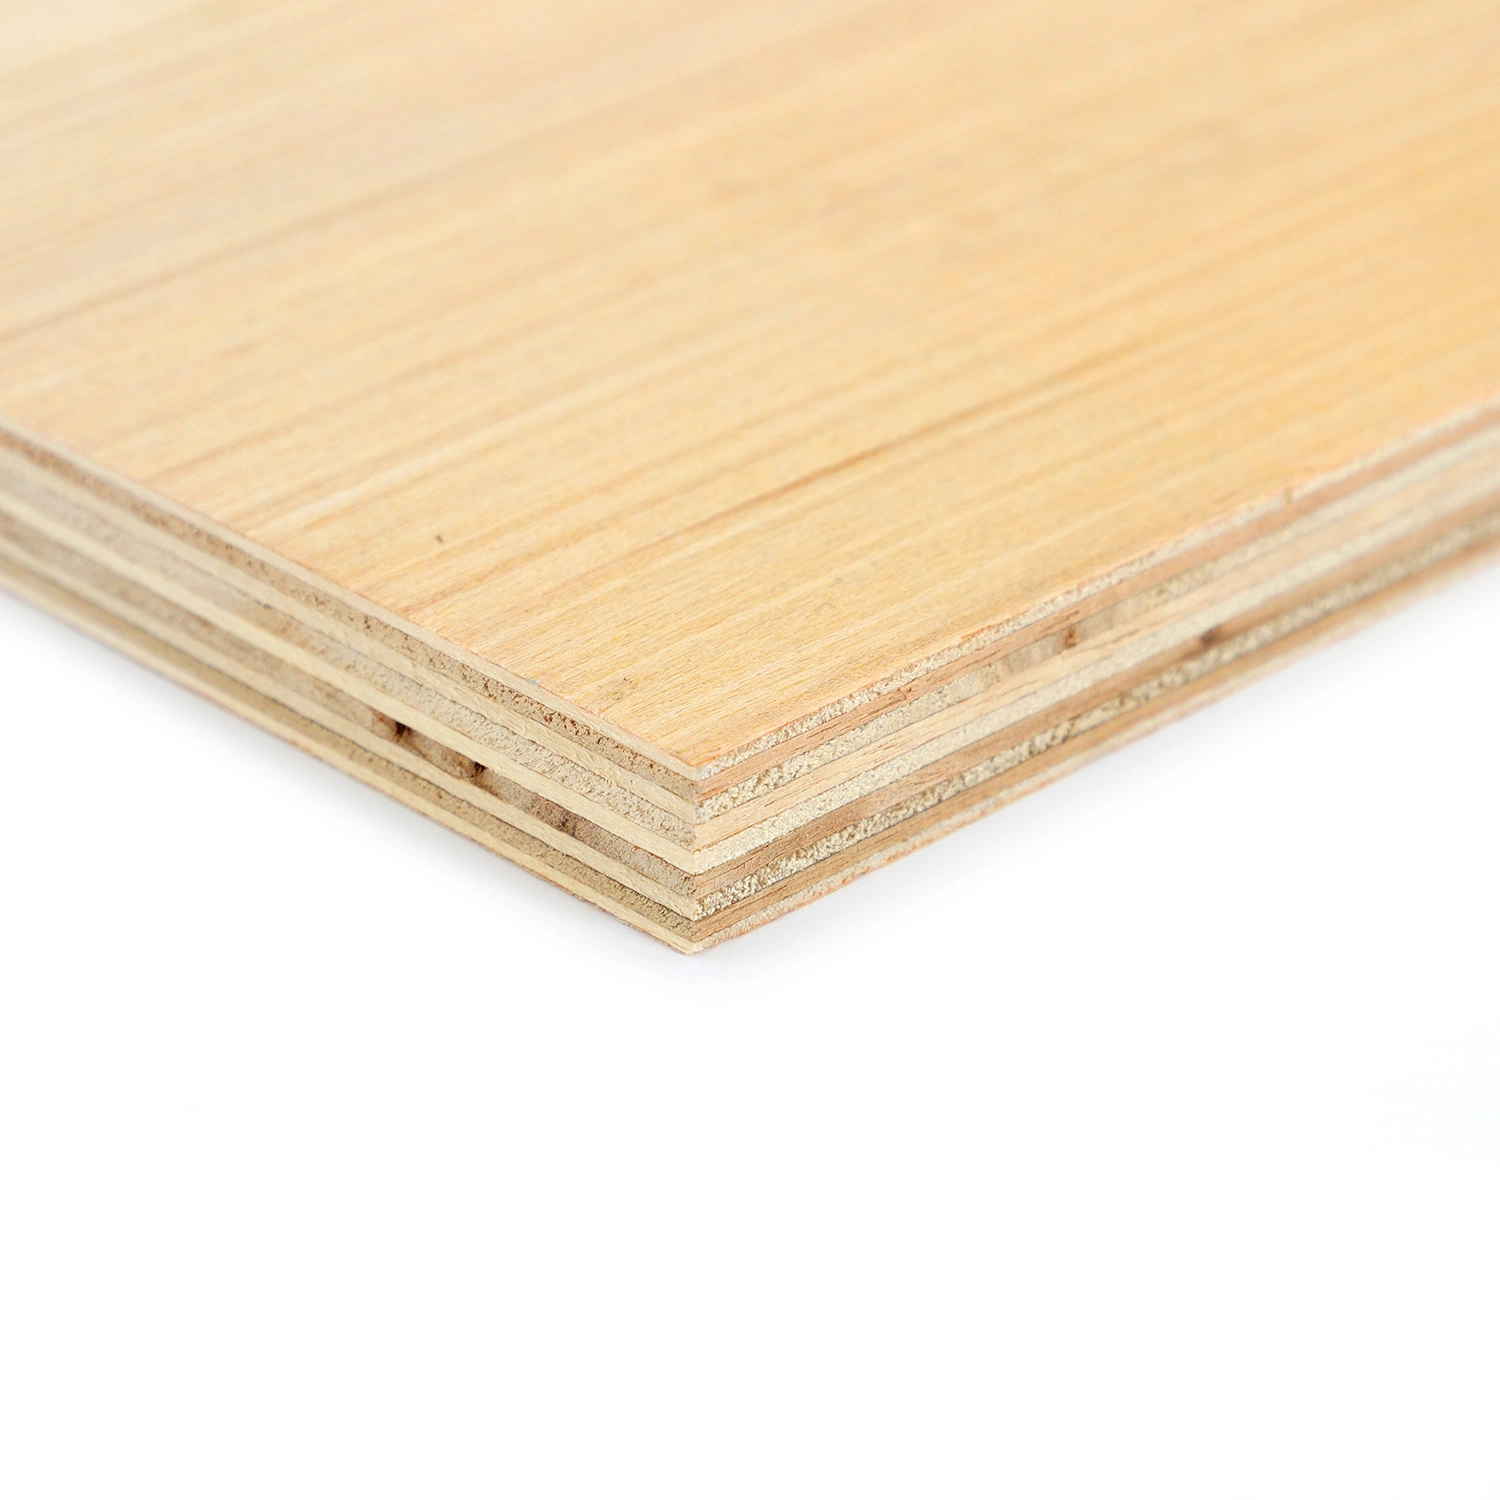 Speziell entwickeltes Furnier-Sperrholz für Möbeldekoration